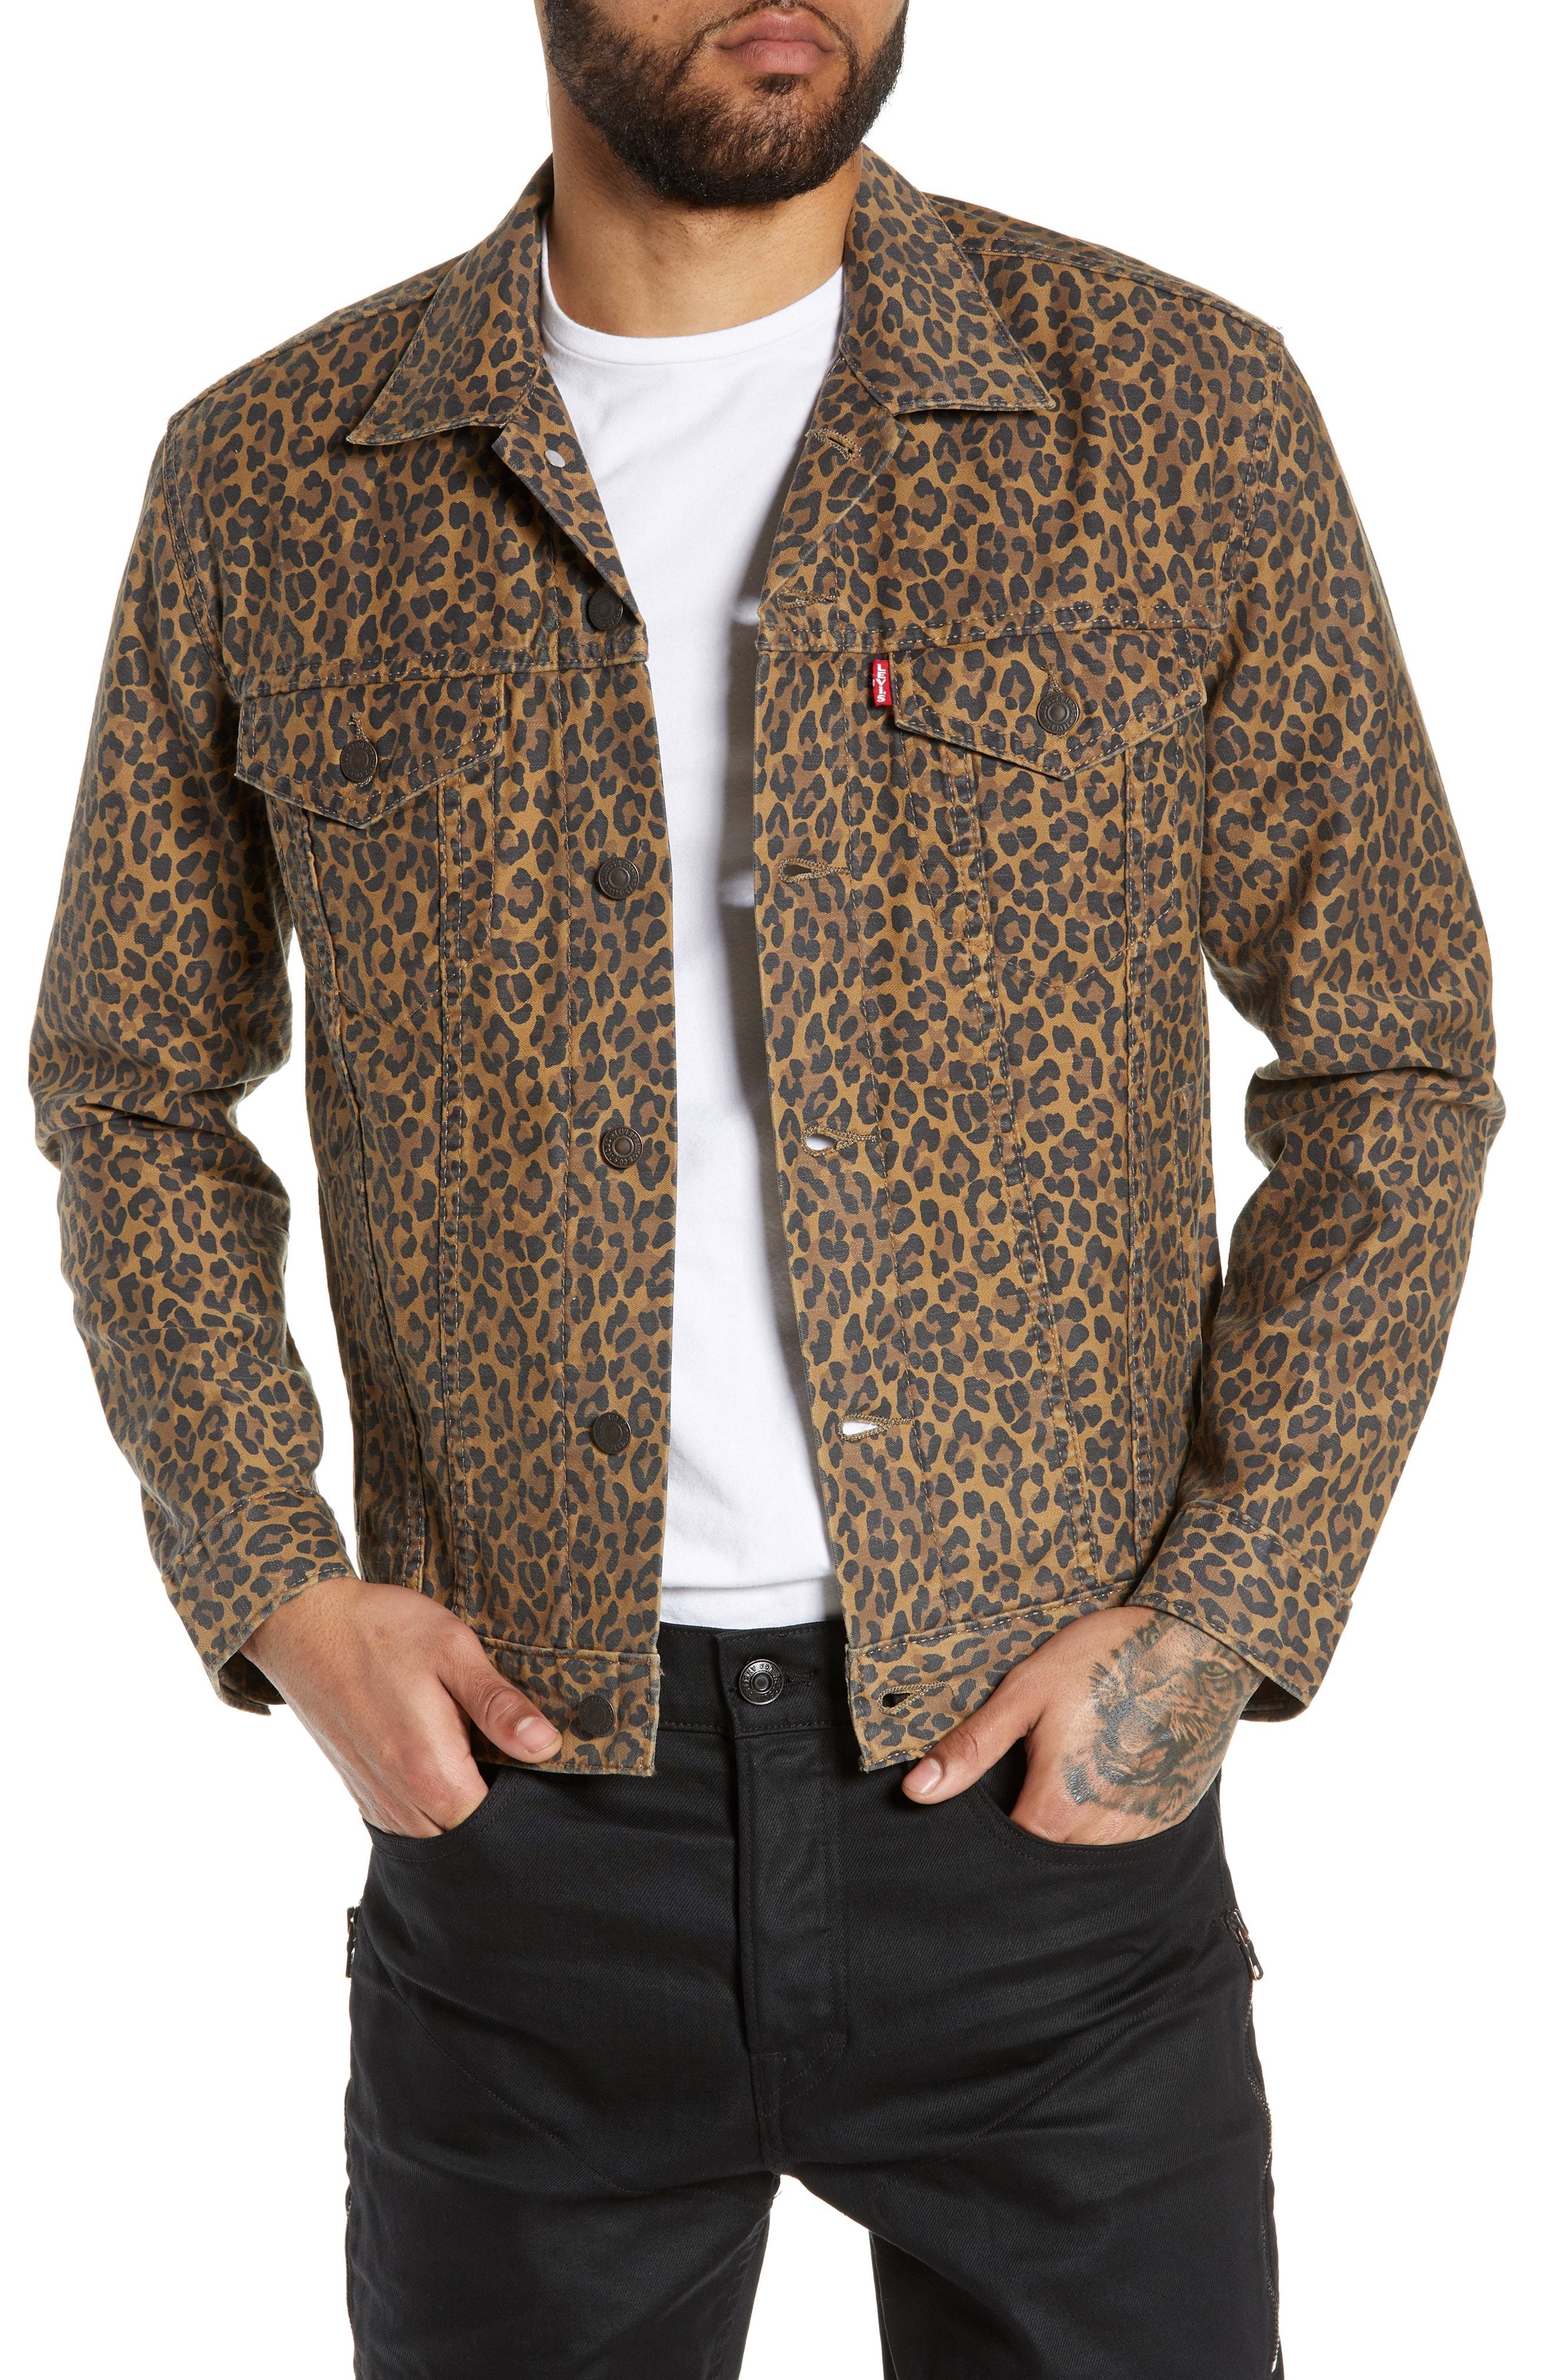 Details about   Levi’s Leopard/Cheetah Animal Print Denim Drivers Jacket